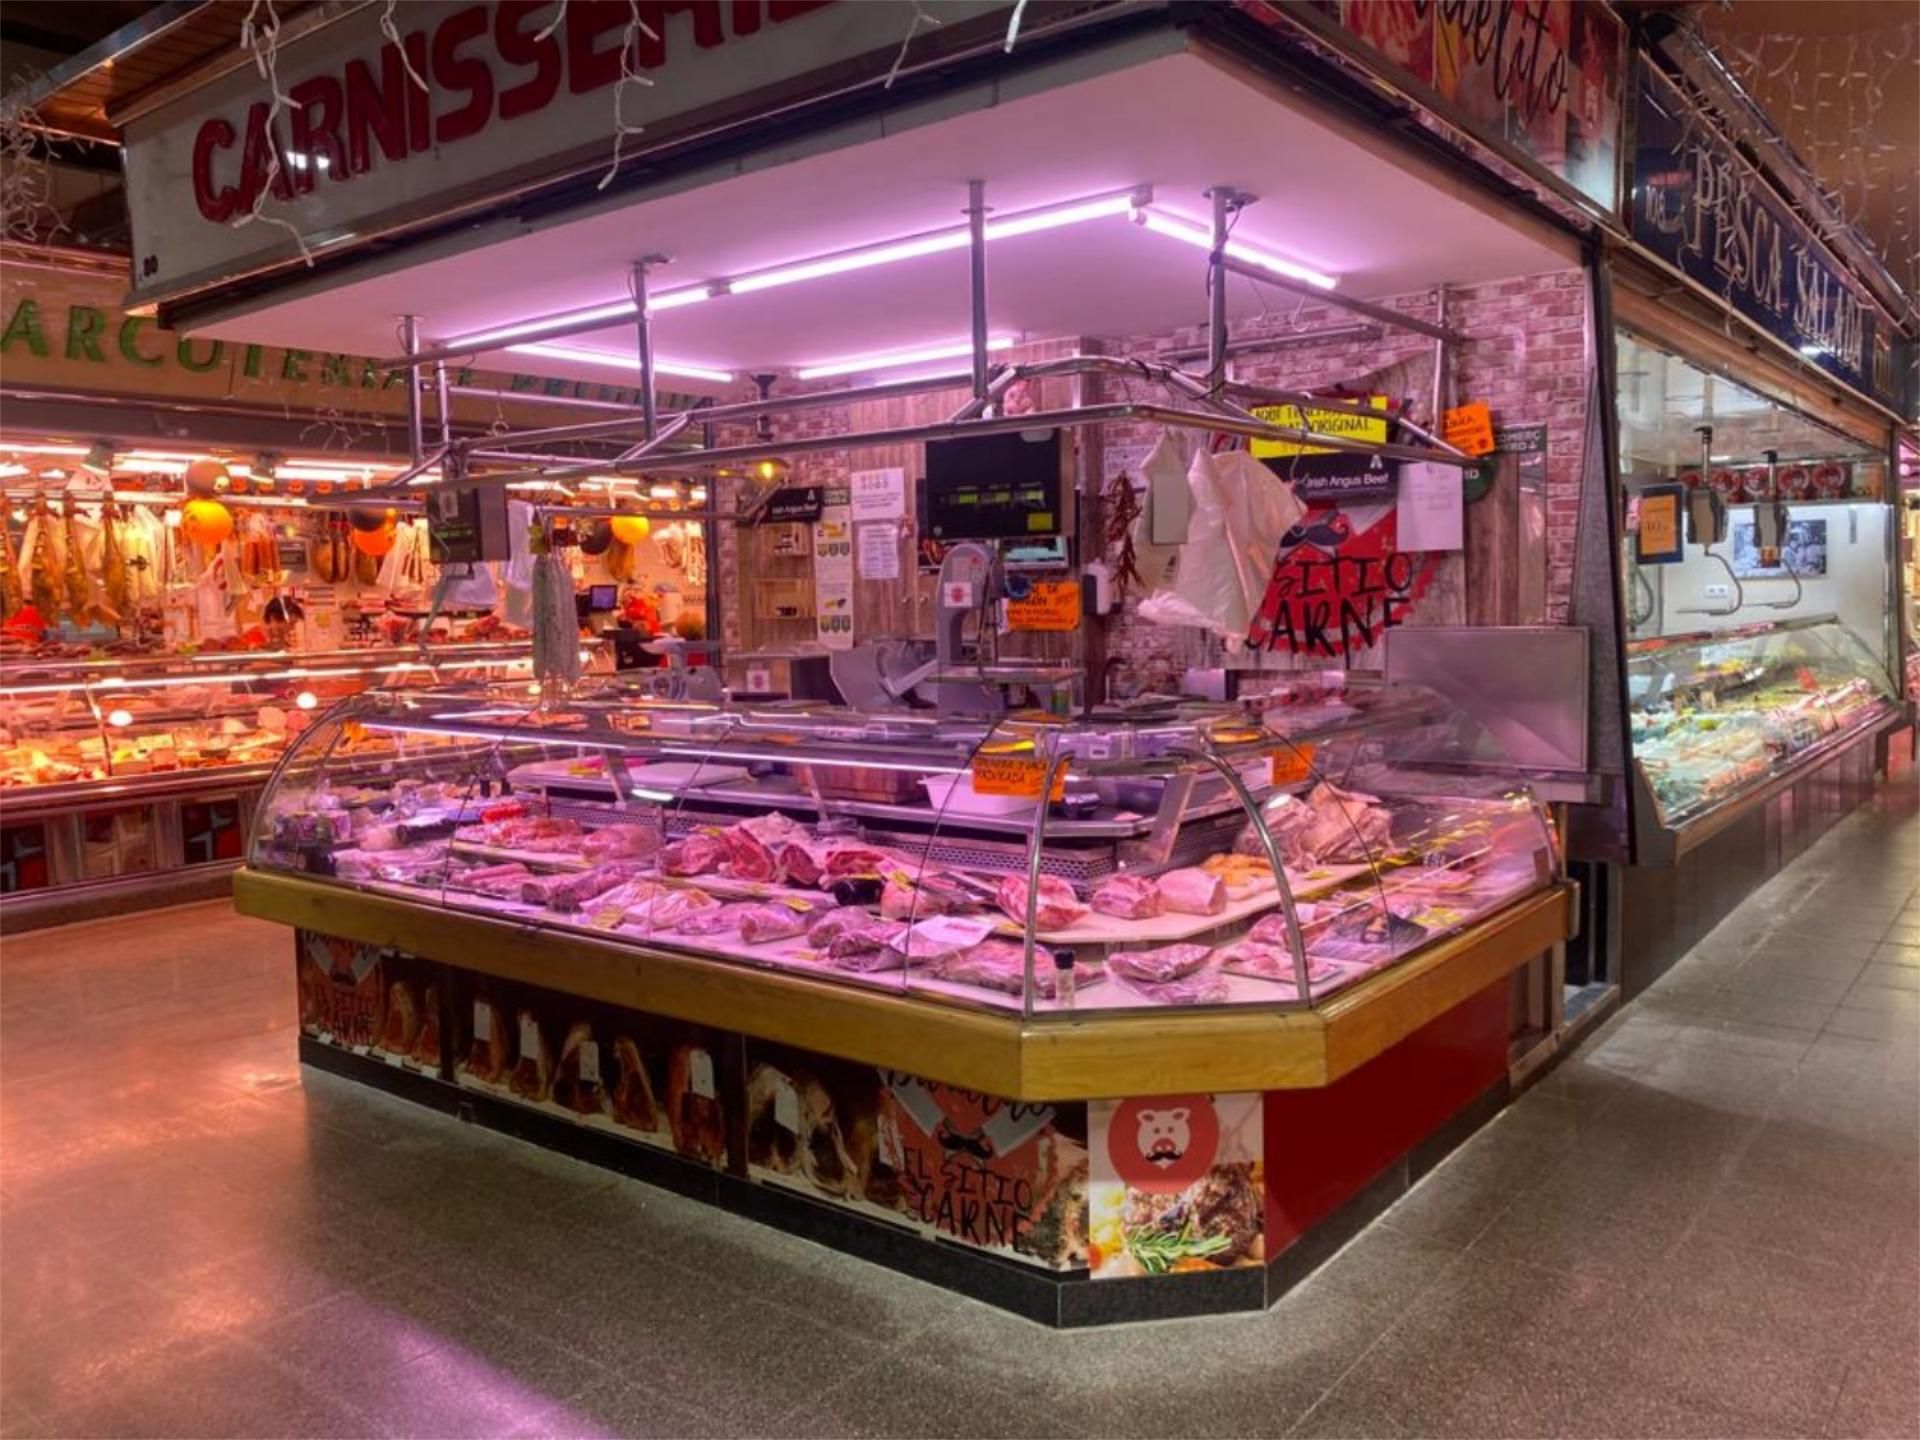 Nevera bajo consumo Neveras, frigoríficos de segunda mano baratos en  Comunidad Valenciana